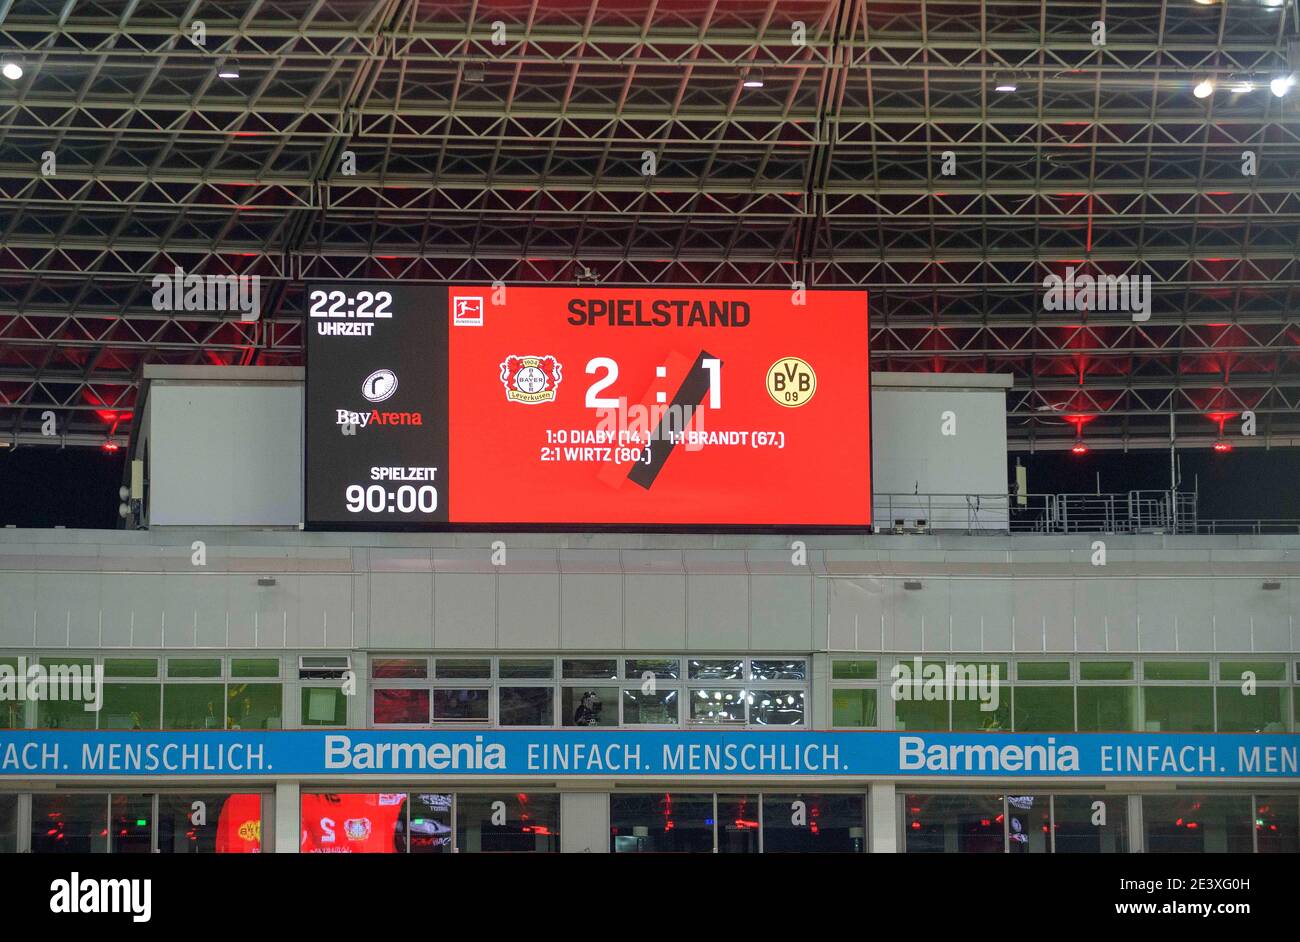 Tableau de bord avec le résultat, résultat final football 1. Bundesliga,  17e jour de match, Bayer